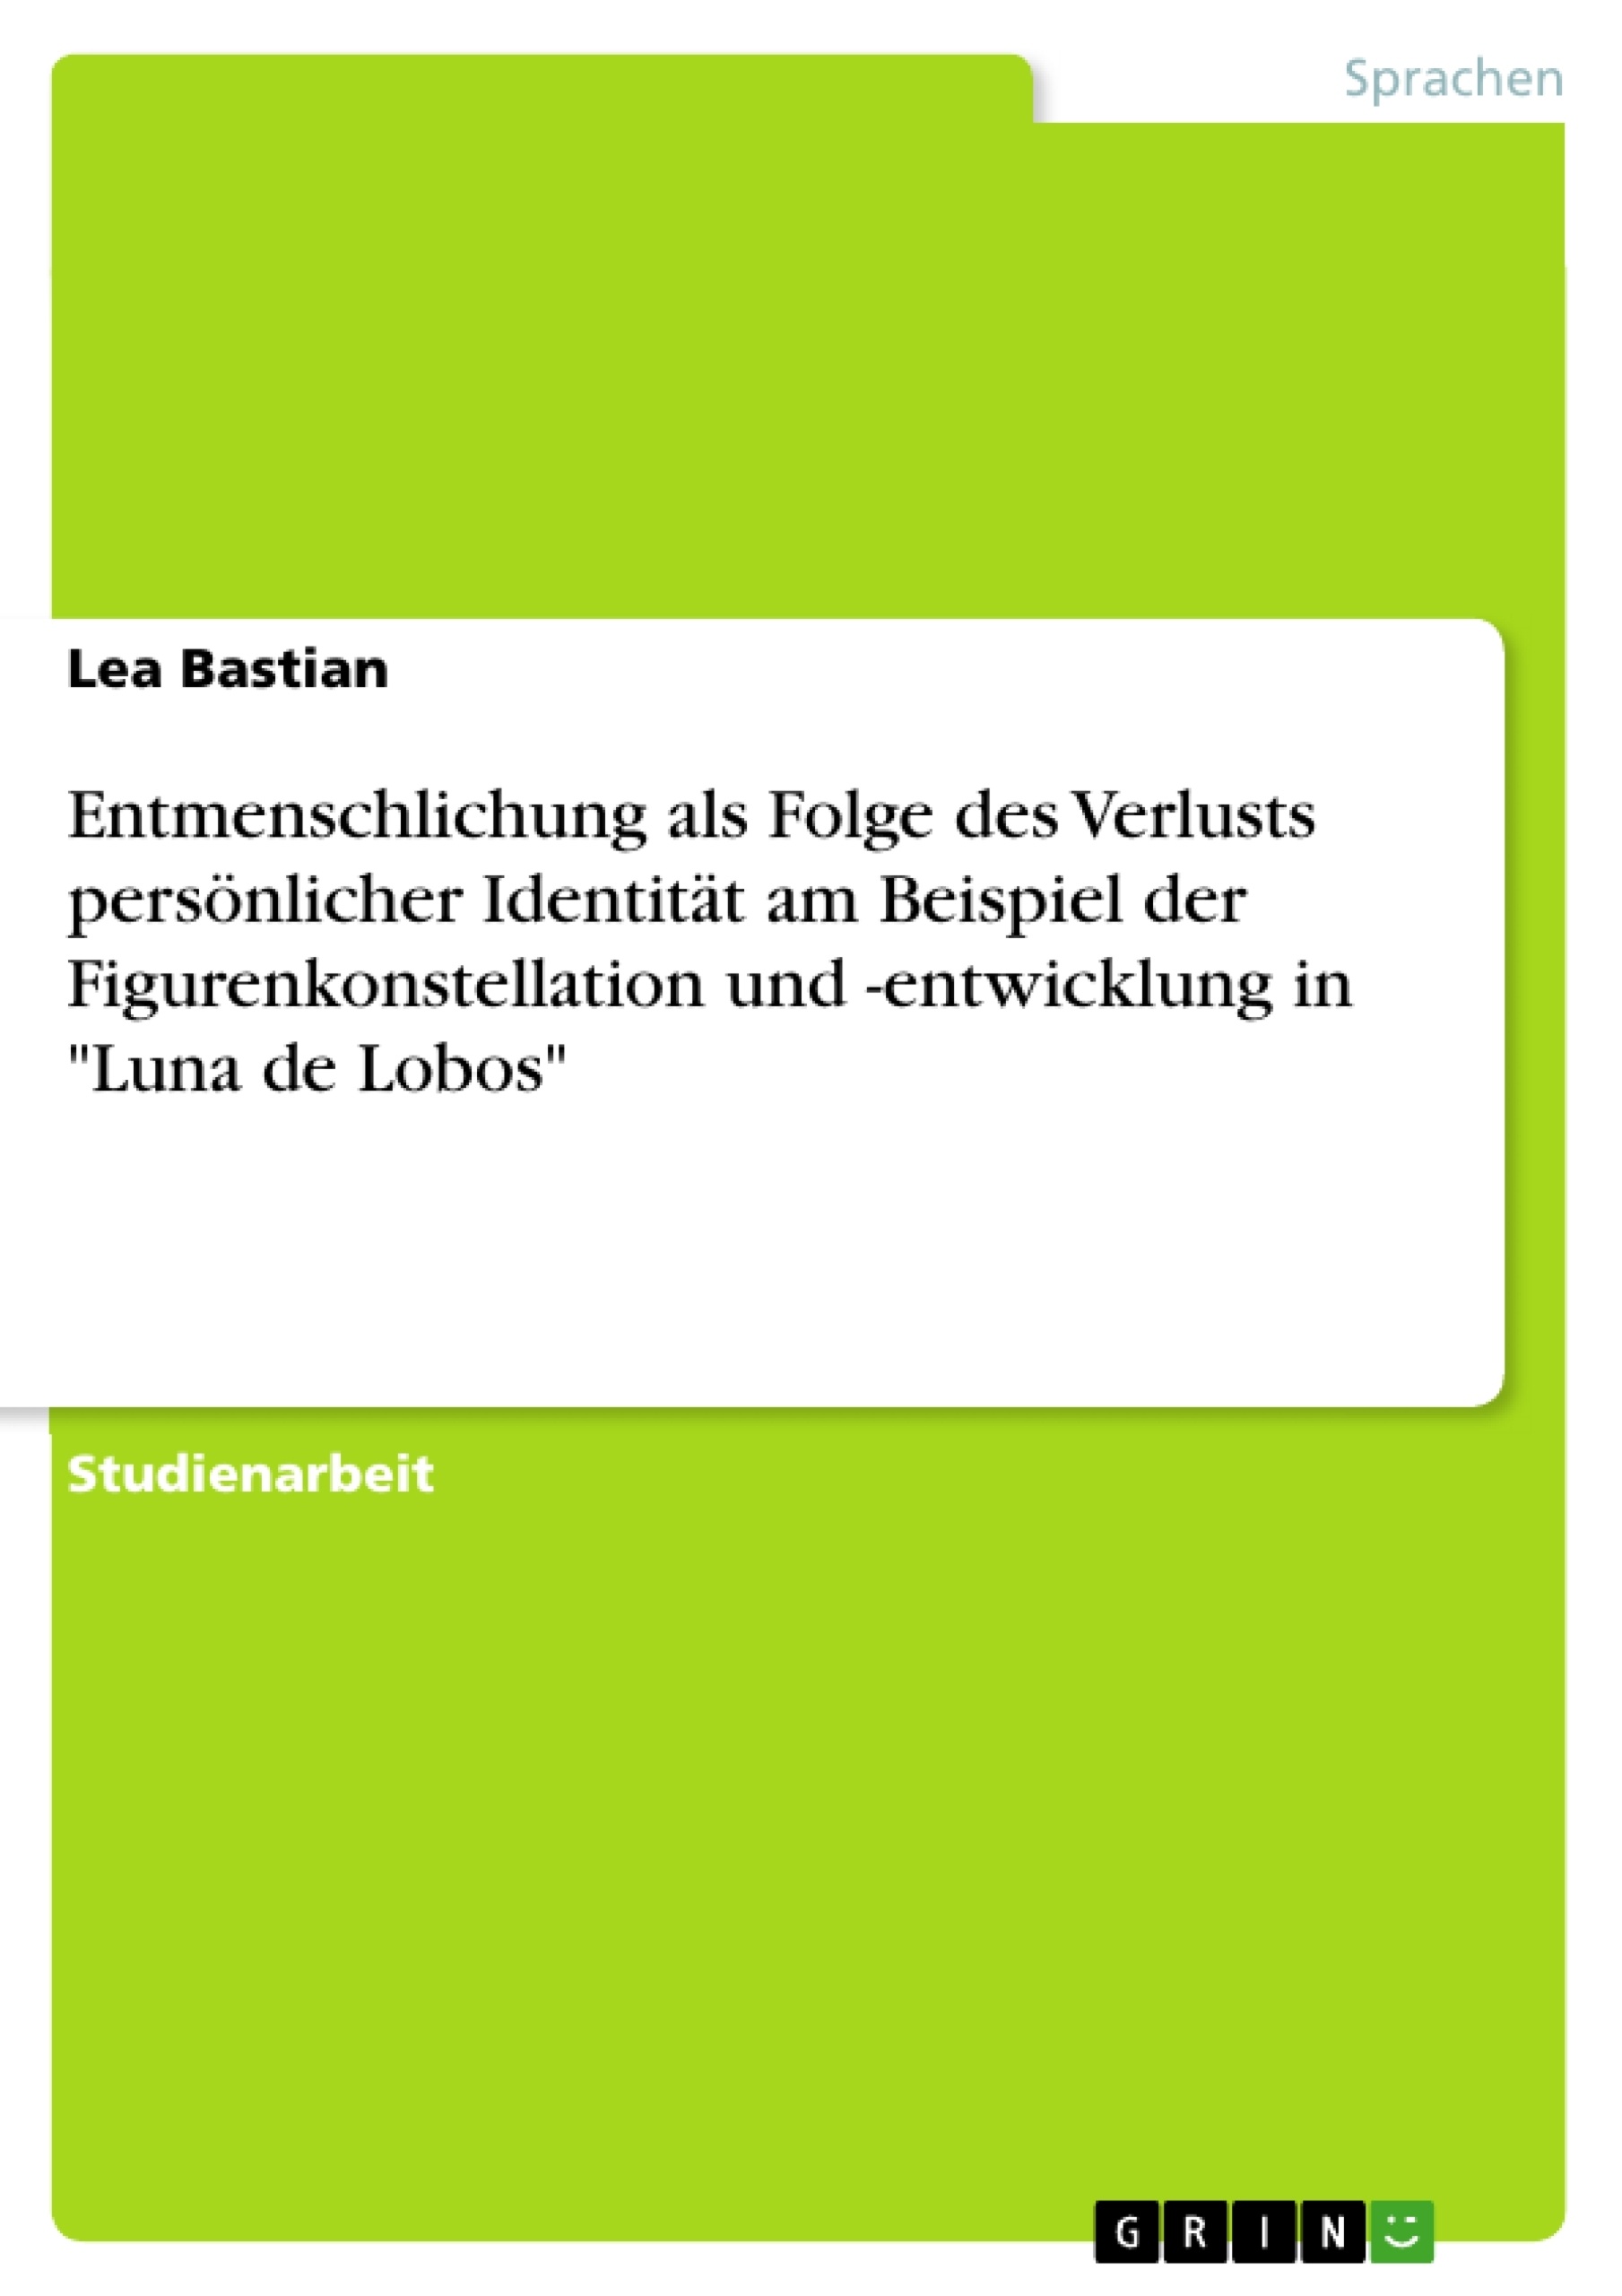 Title: Entmenschlichung als Folge des Verlusts persönlicher Identität am Beispiel der Figurenkonstellation und -entwicklung in "Luna de Lobos"